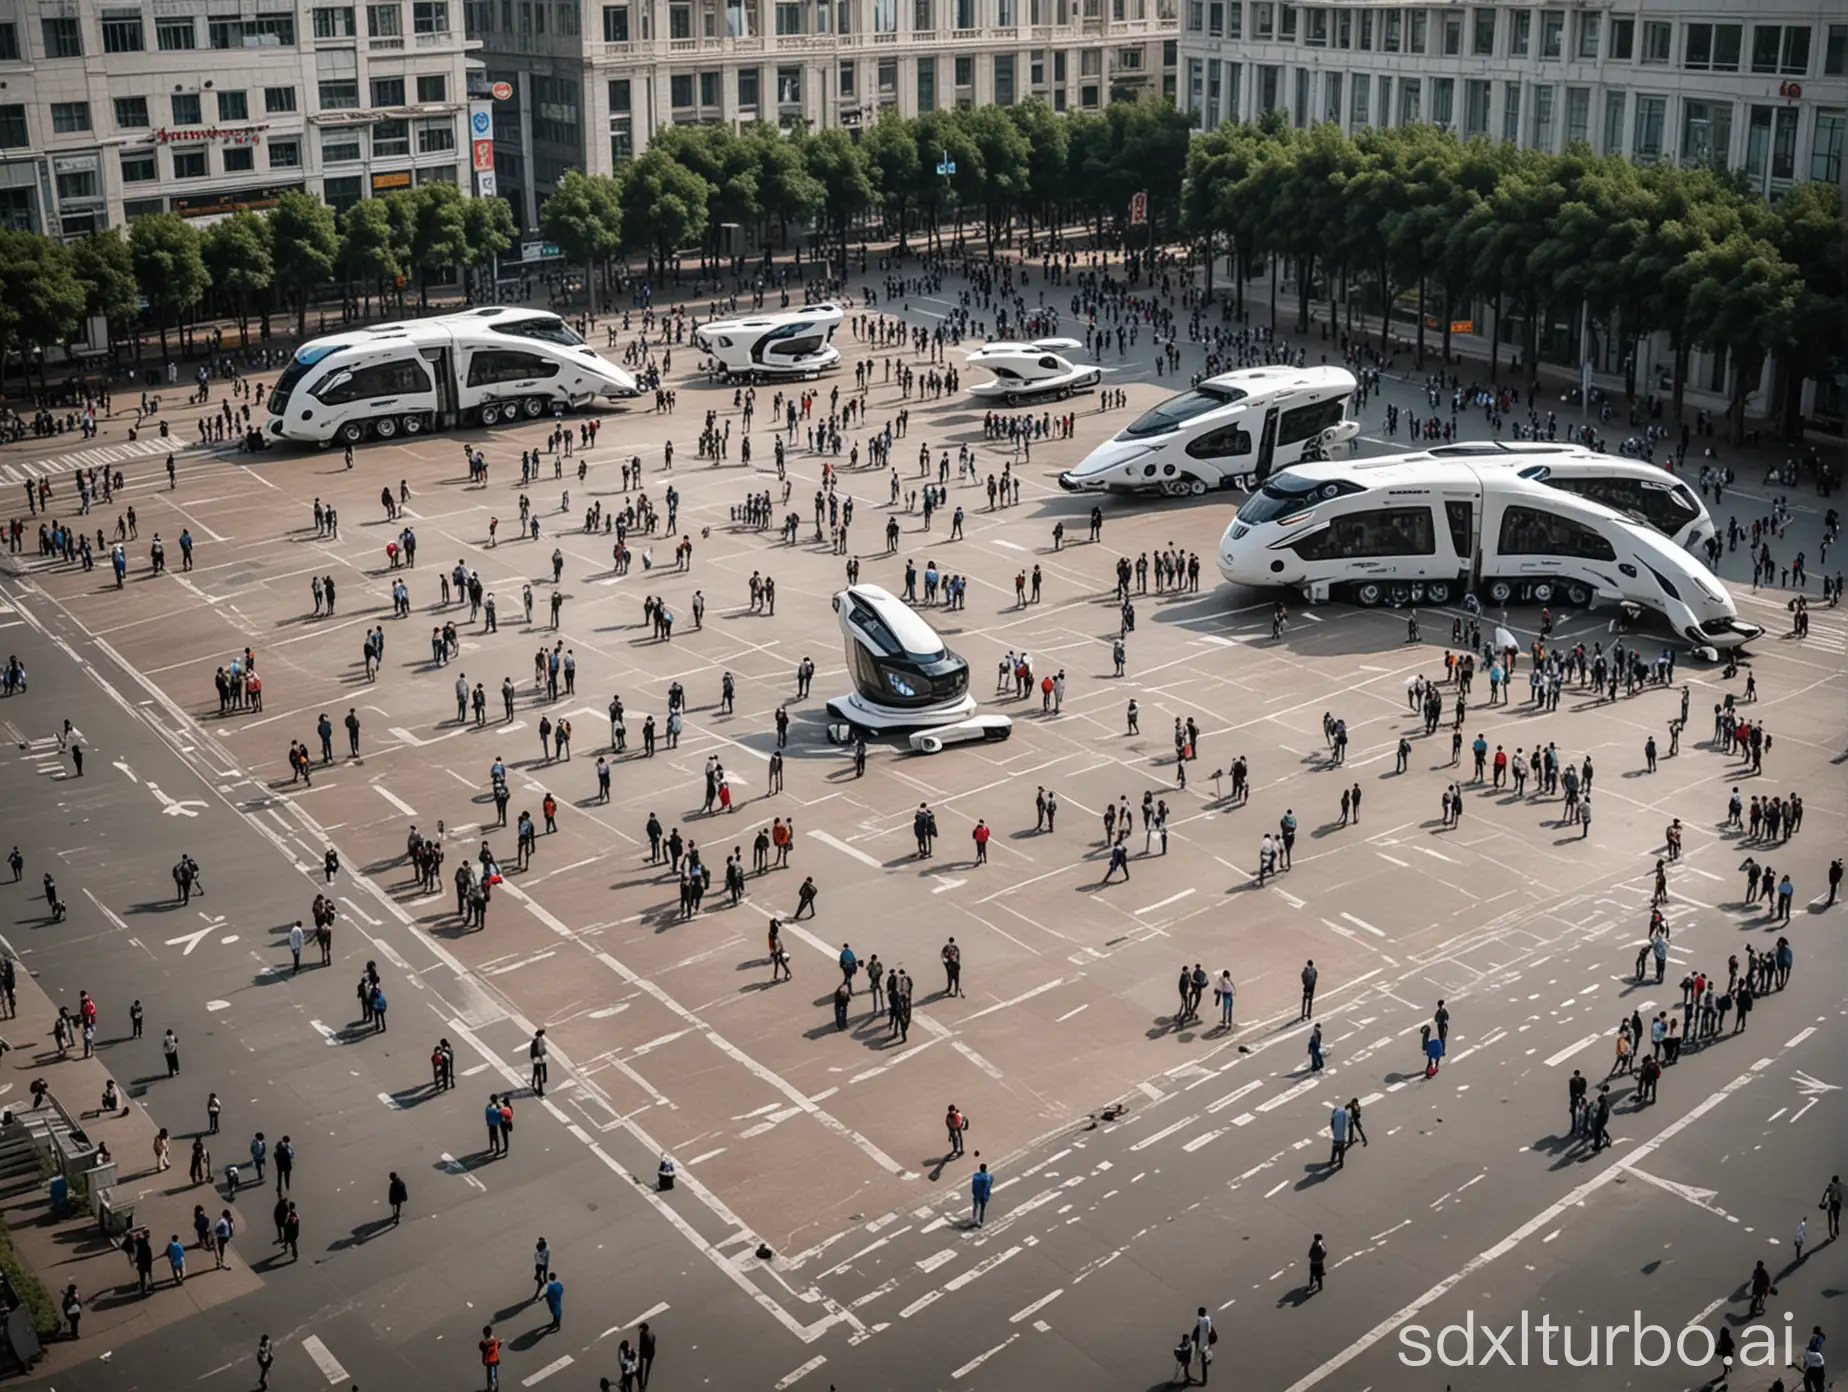 宽阔的人民广场，广场上有人类和机器人穿梭其中，体现出人机交互的场景